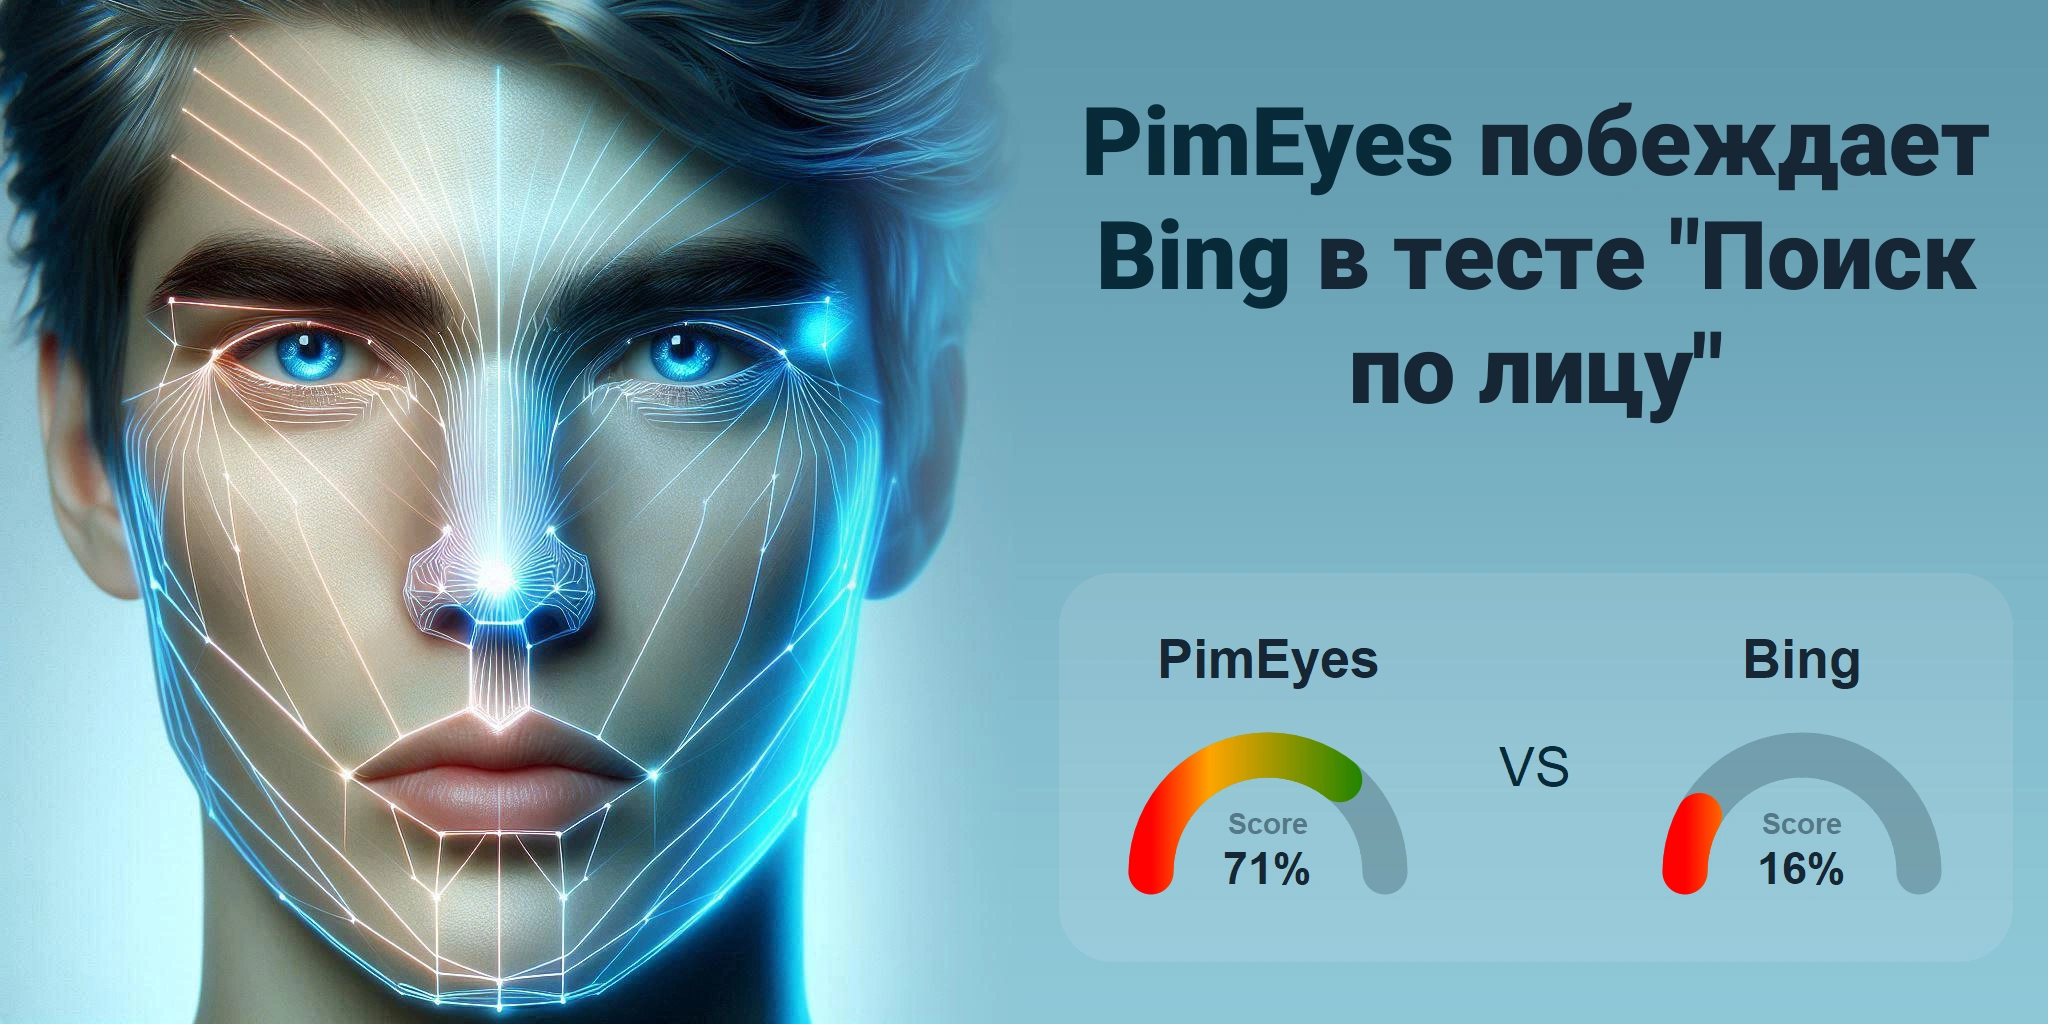 Что лучше для поиска по лицам: <br>PimEyes или Bing?